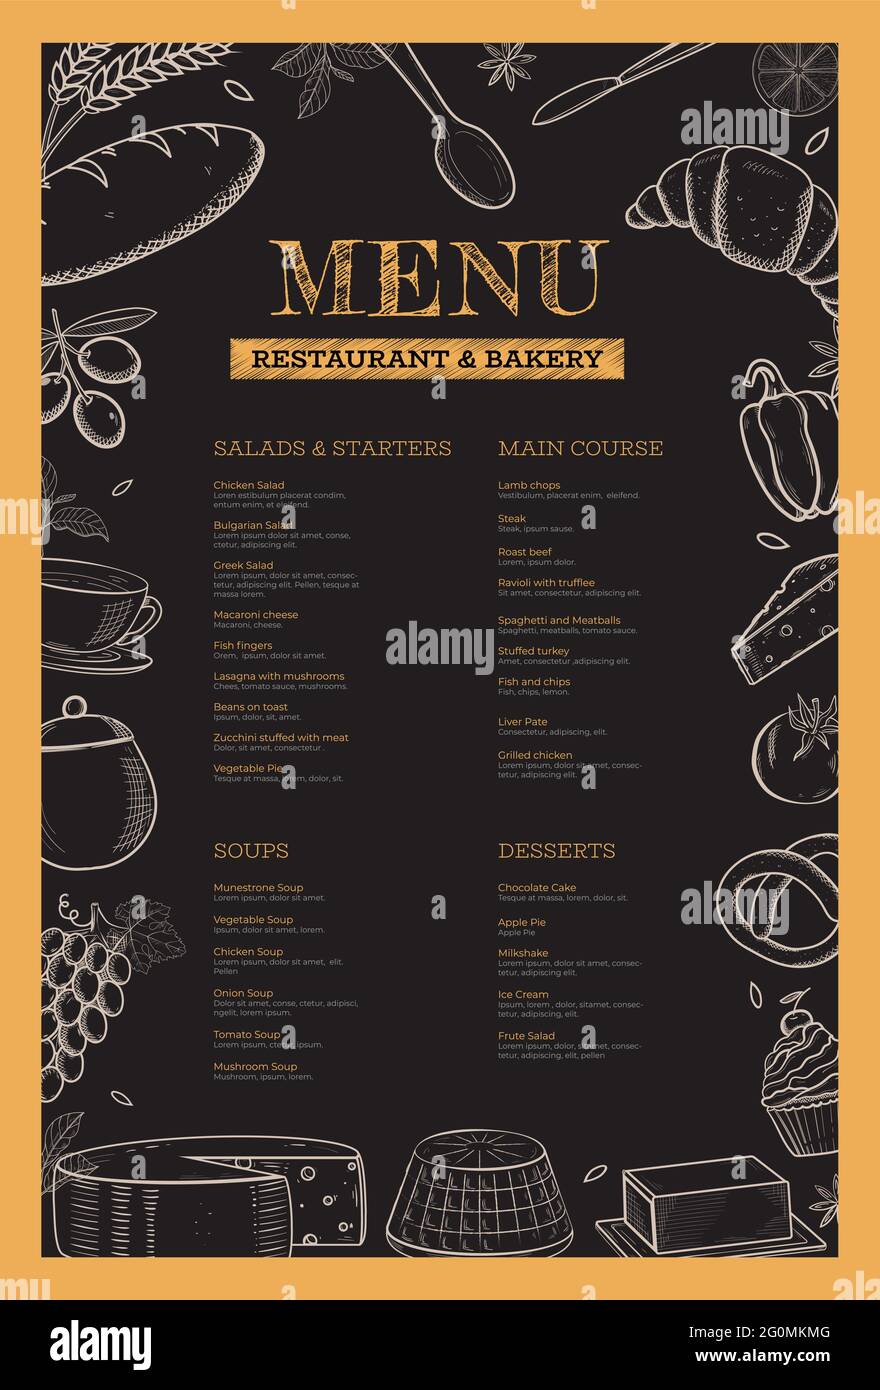 Với mẫu menu nhà hàng và cửa hàng bánh đầy sáng tạo, từng họa tiết được vẽ tay cực kì độc đáo và chi tiết, chắc chắn sẽ làm khách hàng thích thú và muốn ăn ngay lập tức! Hãy đến với chúng tôi để được trải nghiệm một MENU thực phẩm vô cùng tuyệt vời. 